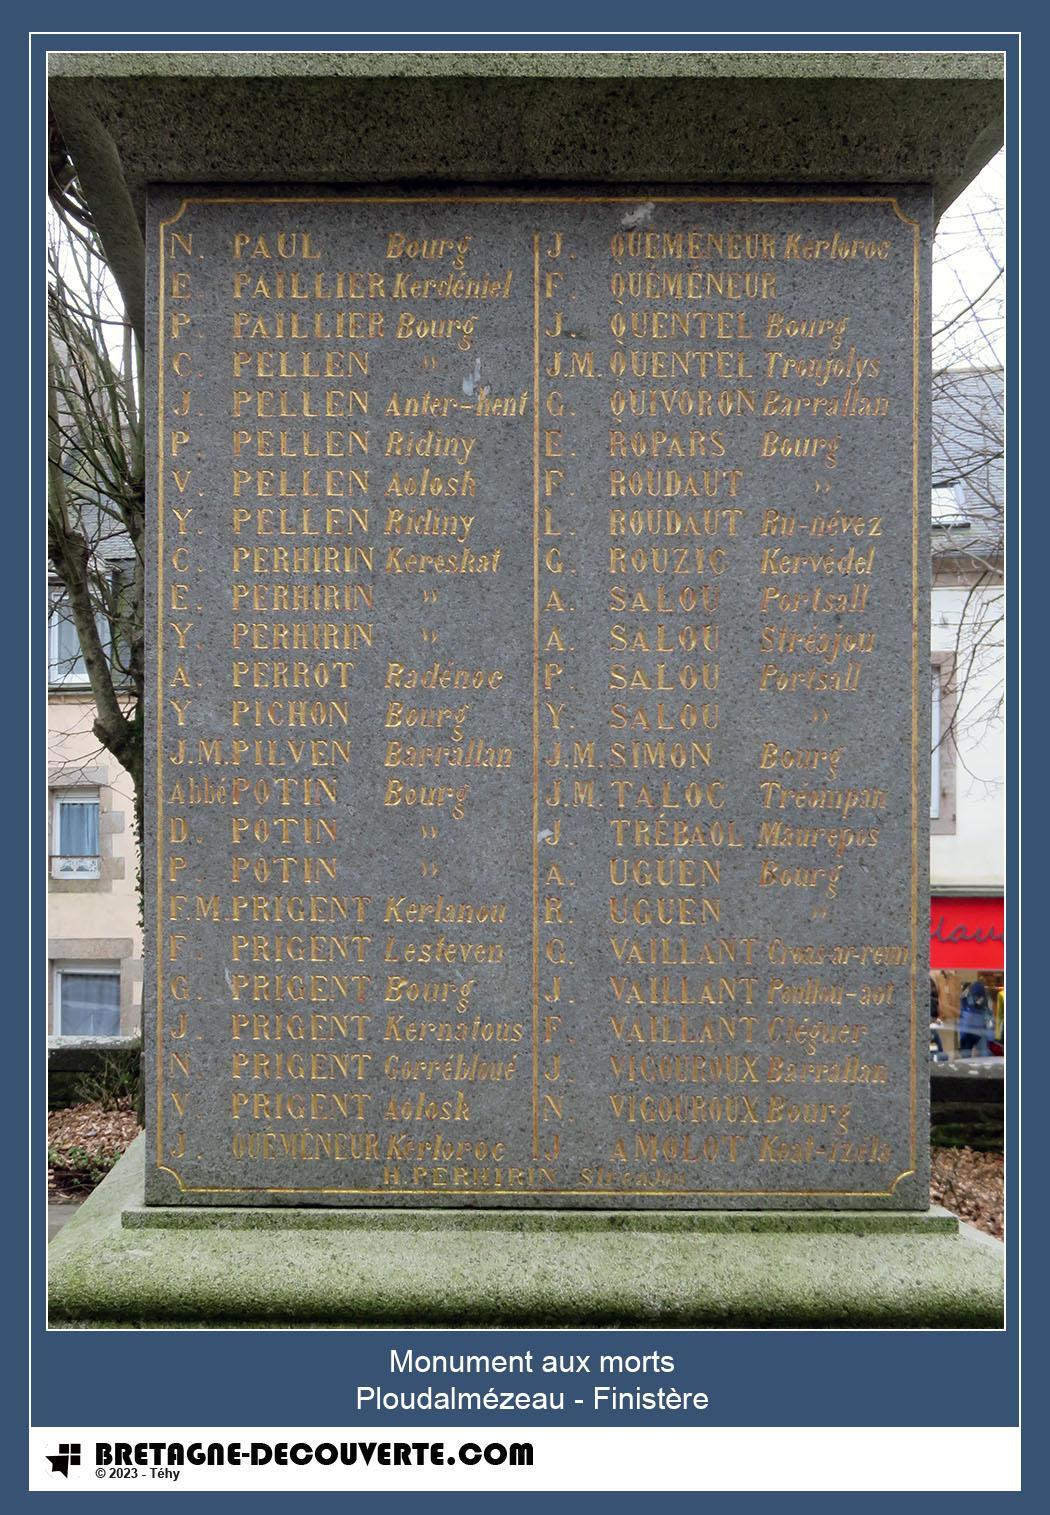 Les noms gravés sur le monument aux morts de Ploudalmézeau